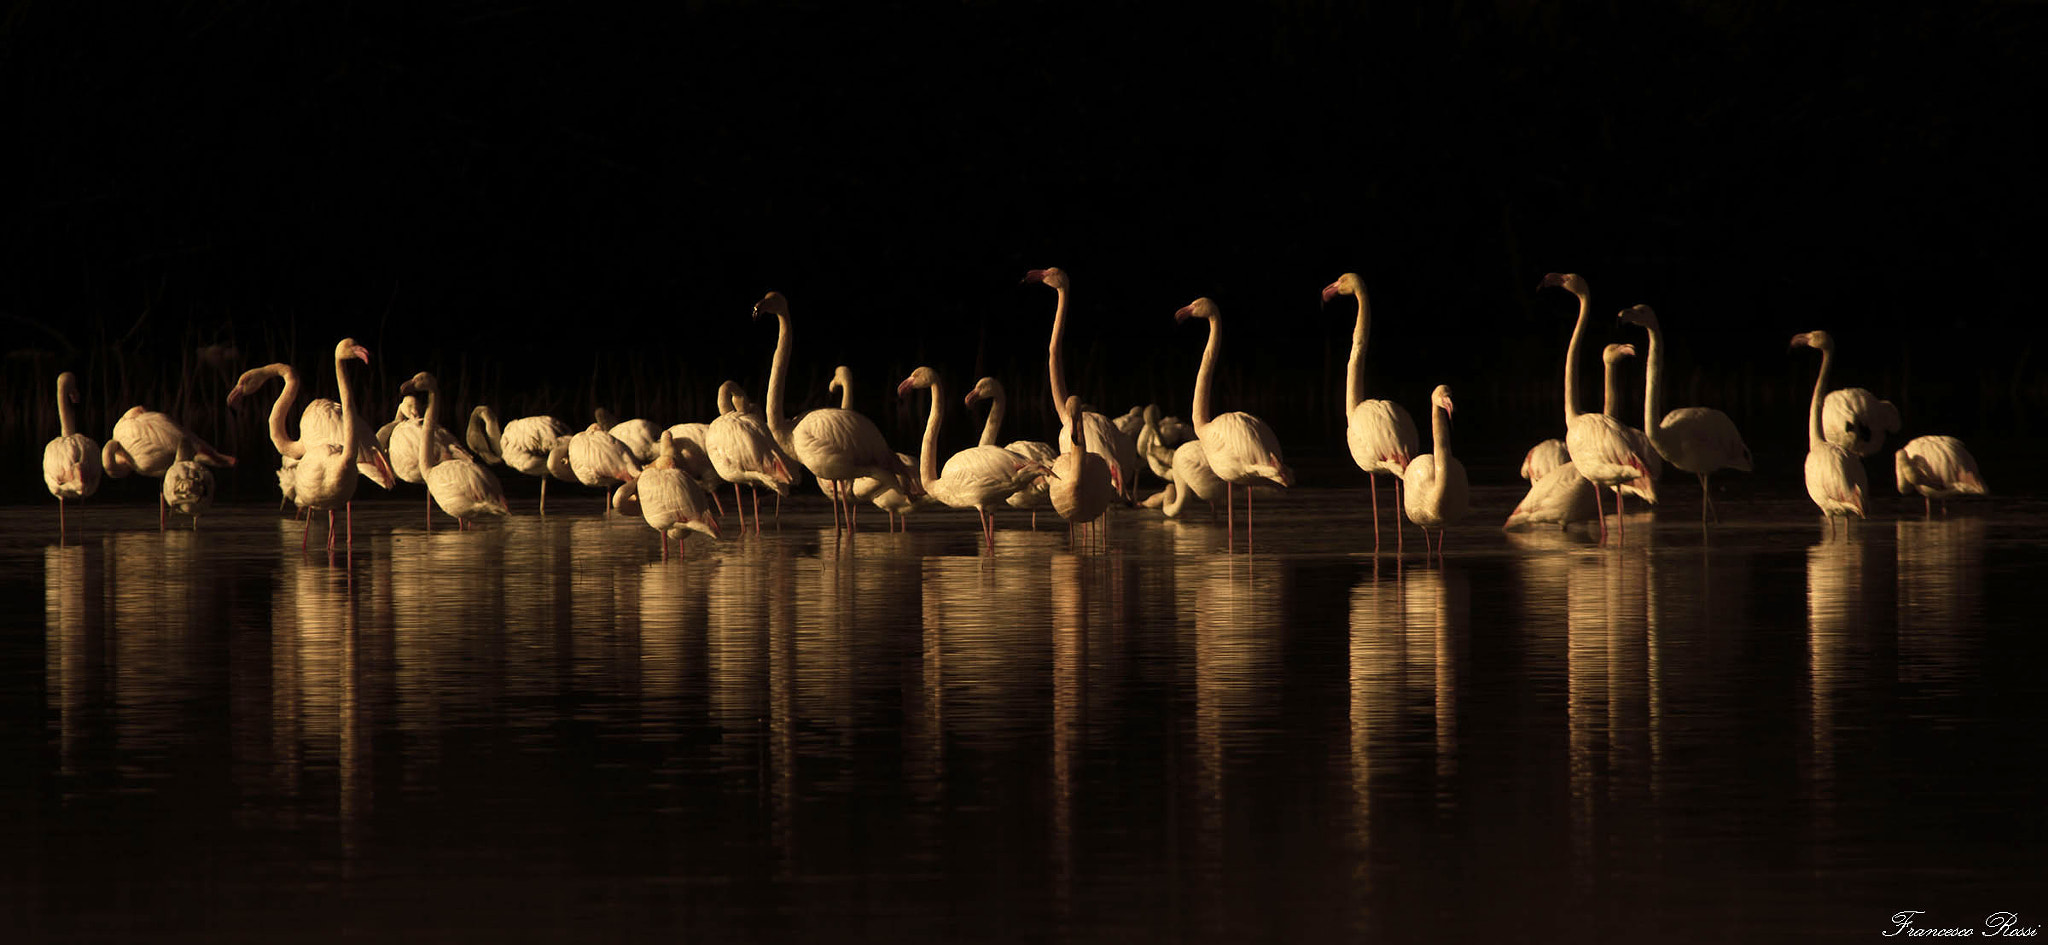 Canon EOS 7D sample photo. Flamingos "in black" photography